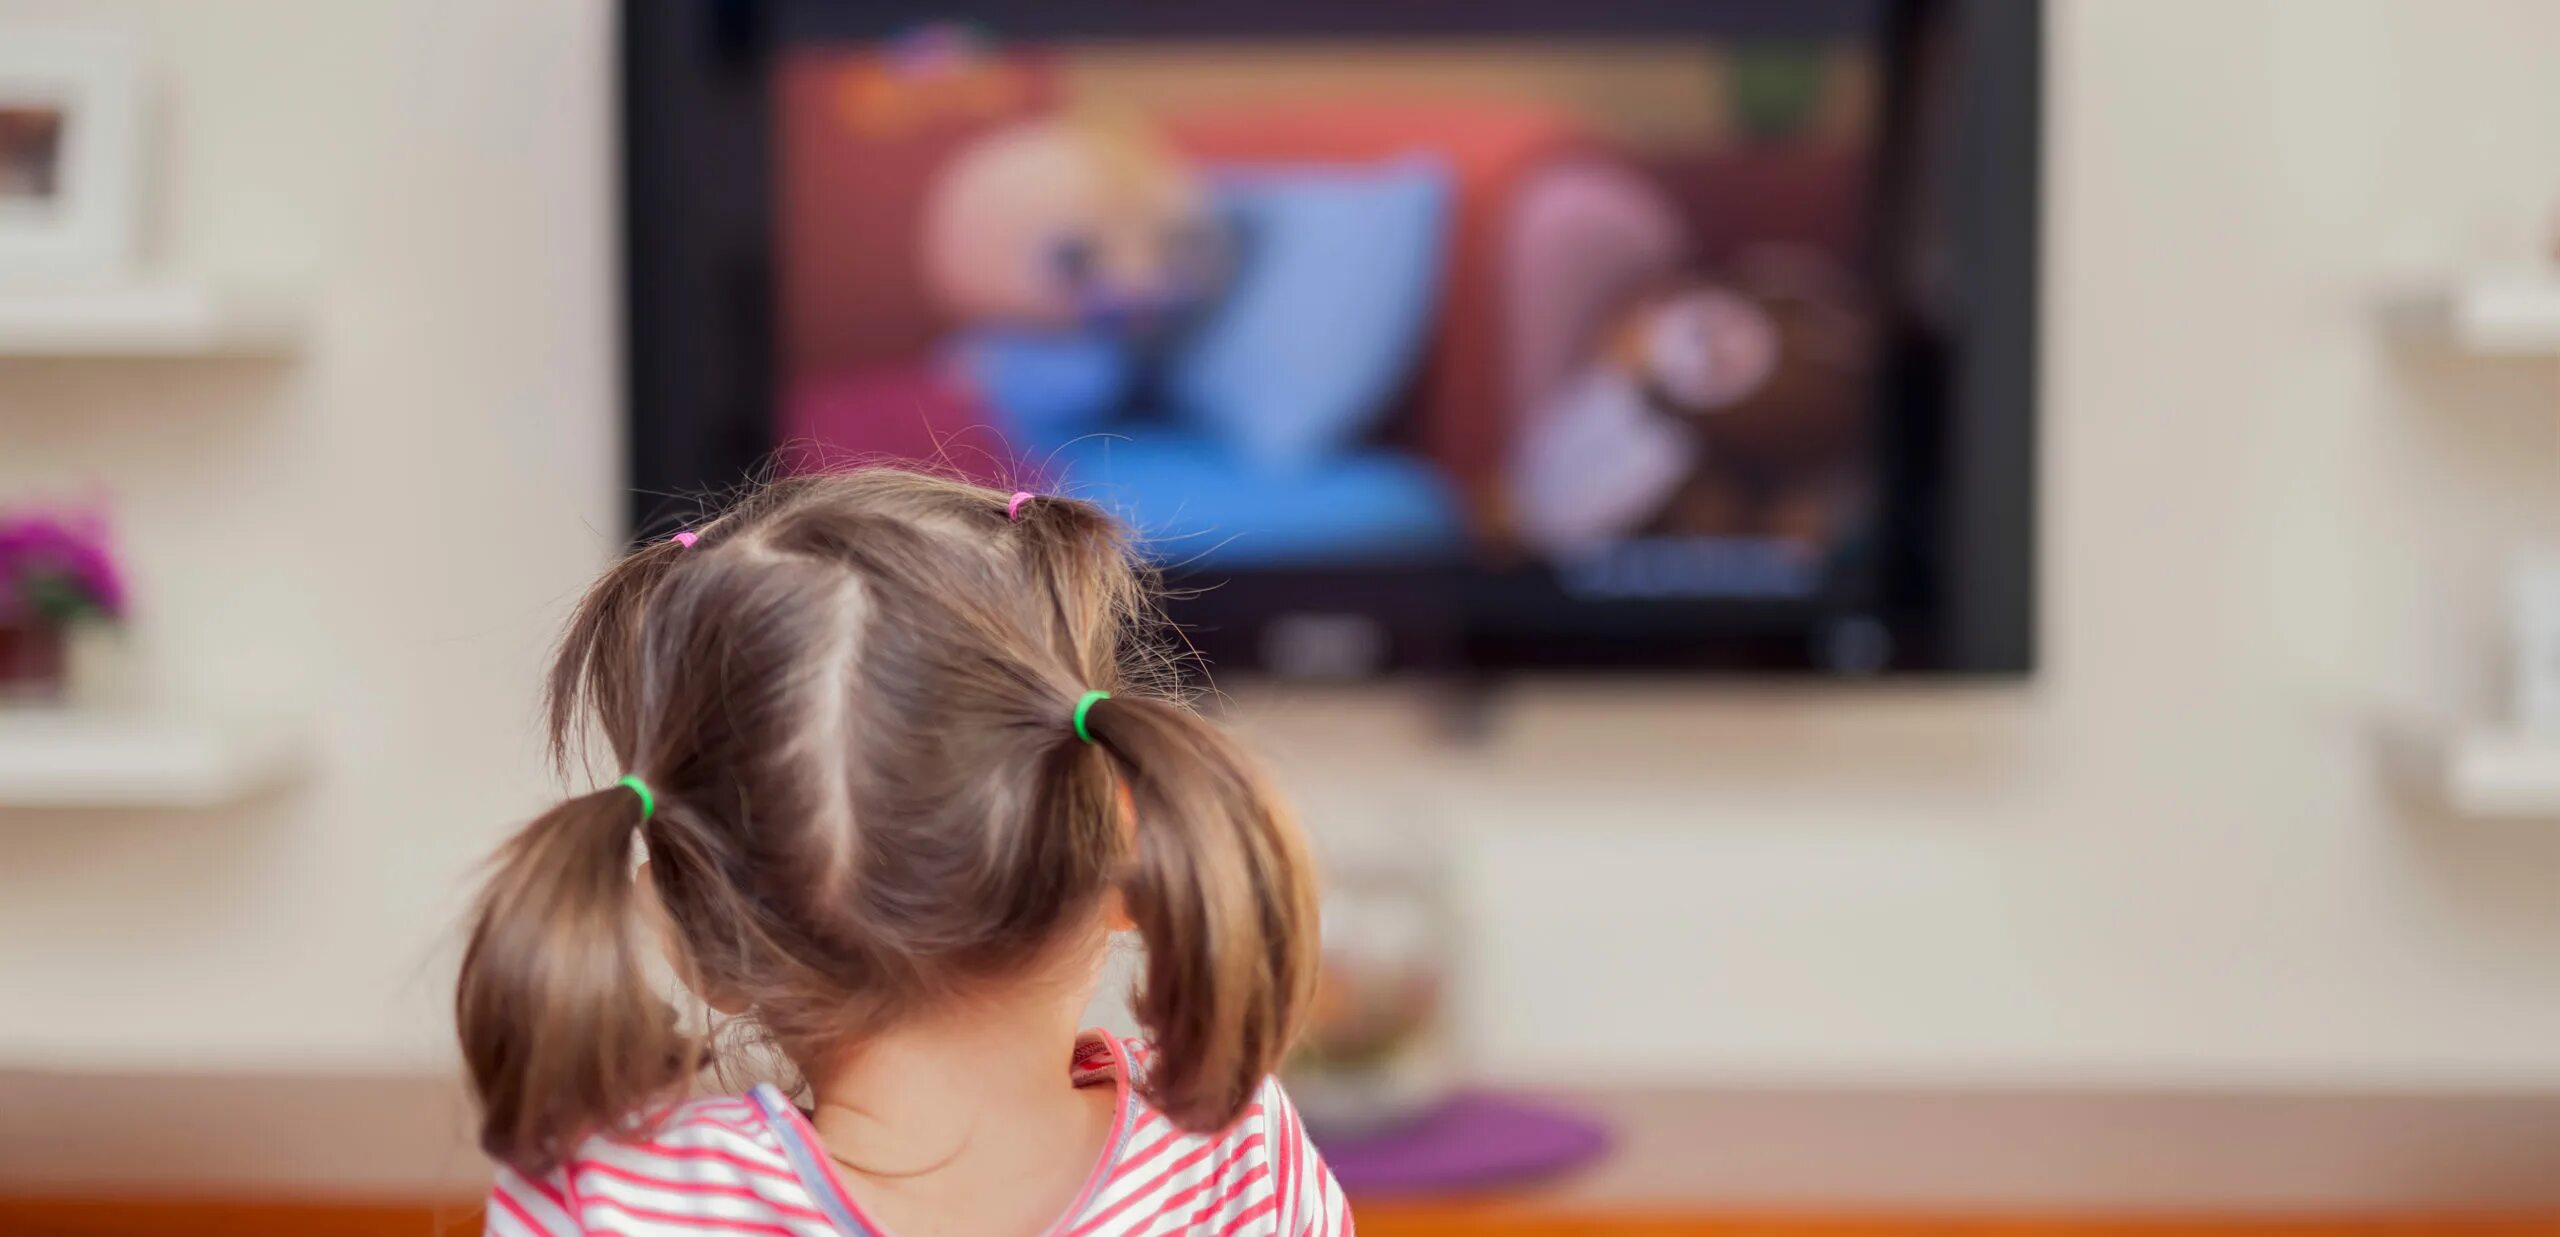 Статья о детях видео. Телевизор для детей. Девочка телевизор. Дети возле телевизора.